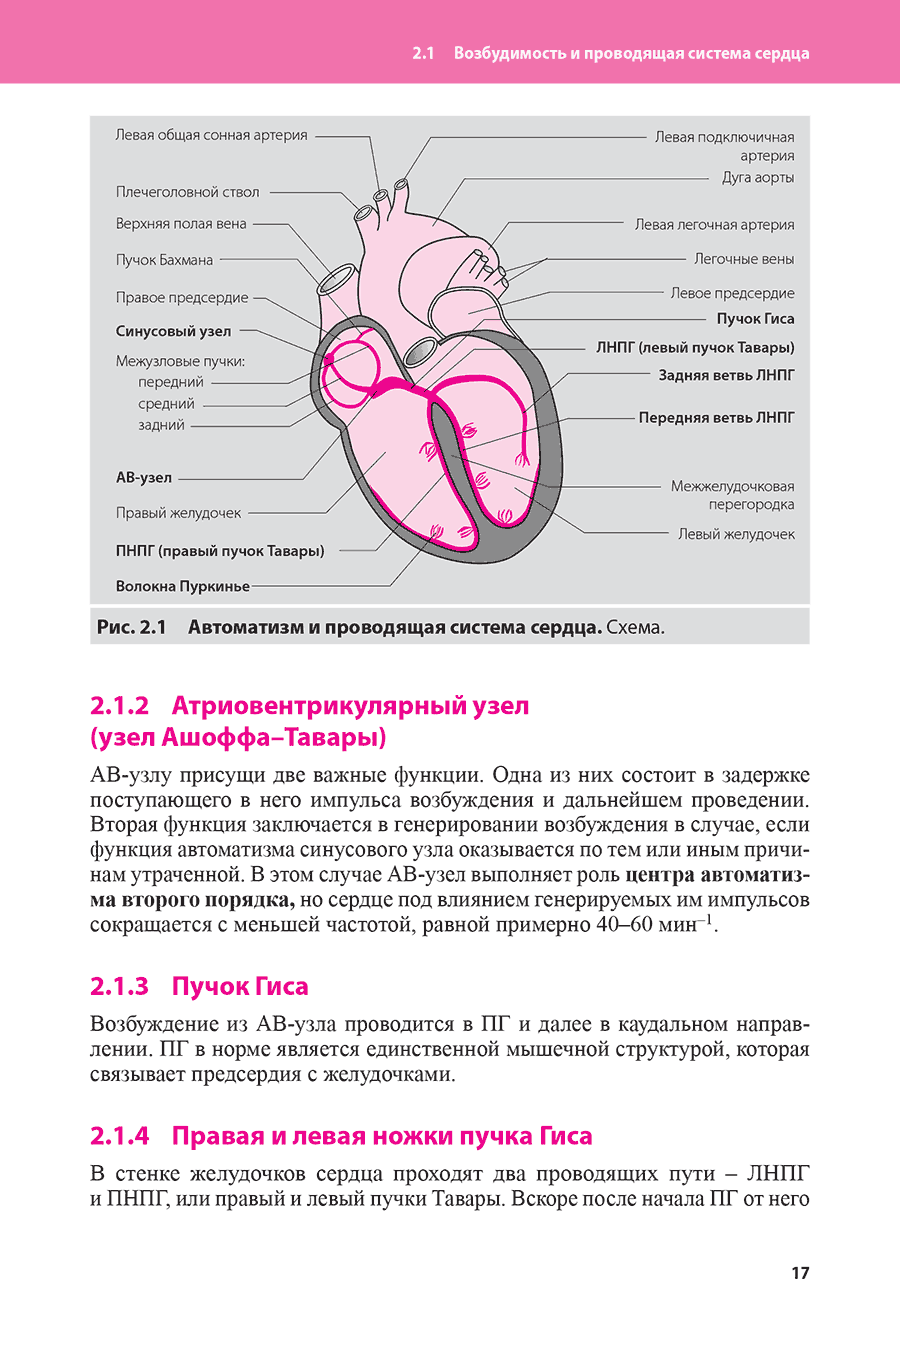 Рис. 2.1 Автоматизм и проводящая система сердца. Схема.